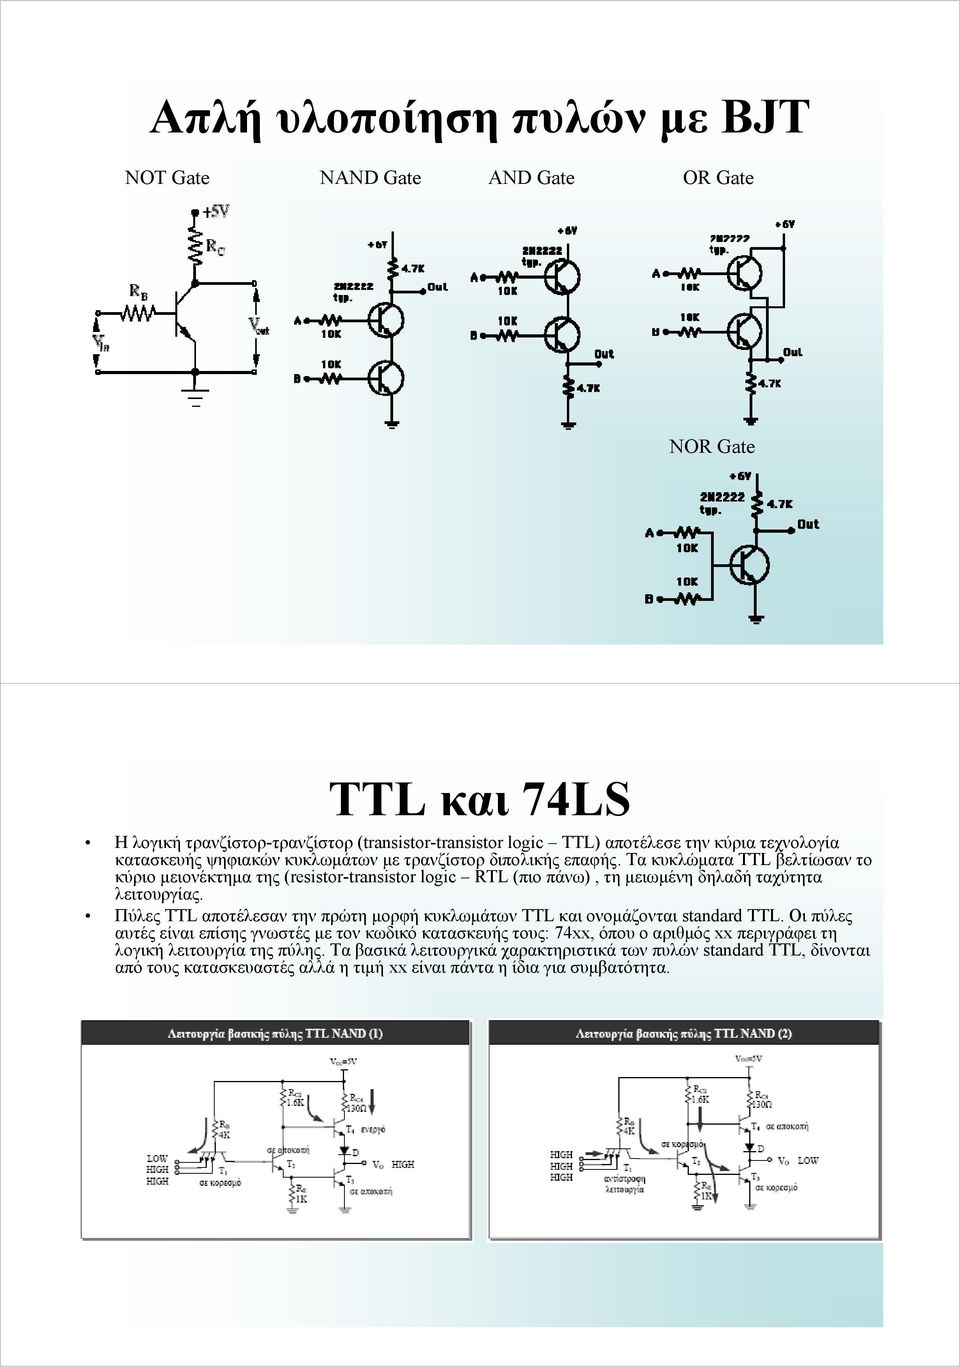 Τα κυκλώματα TTL βελτίωσαν το κύριο μειονέκτημα της (resistor-transistor logic RTL (πιο πάνω), τη μειωμένη δηλαδή ταχύτητα λειτουργίας.